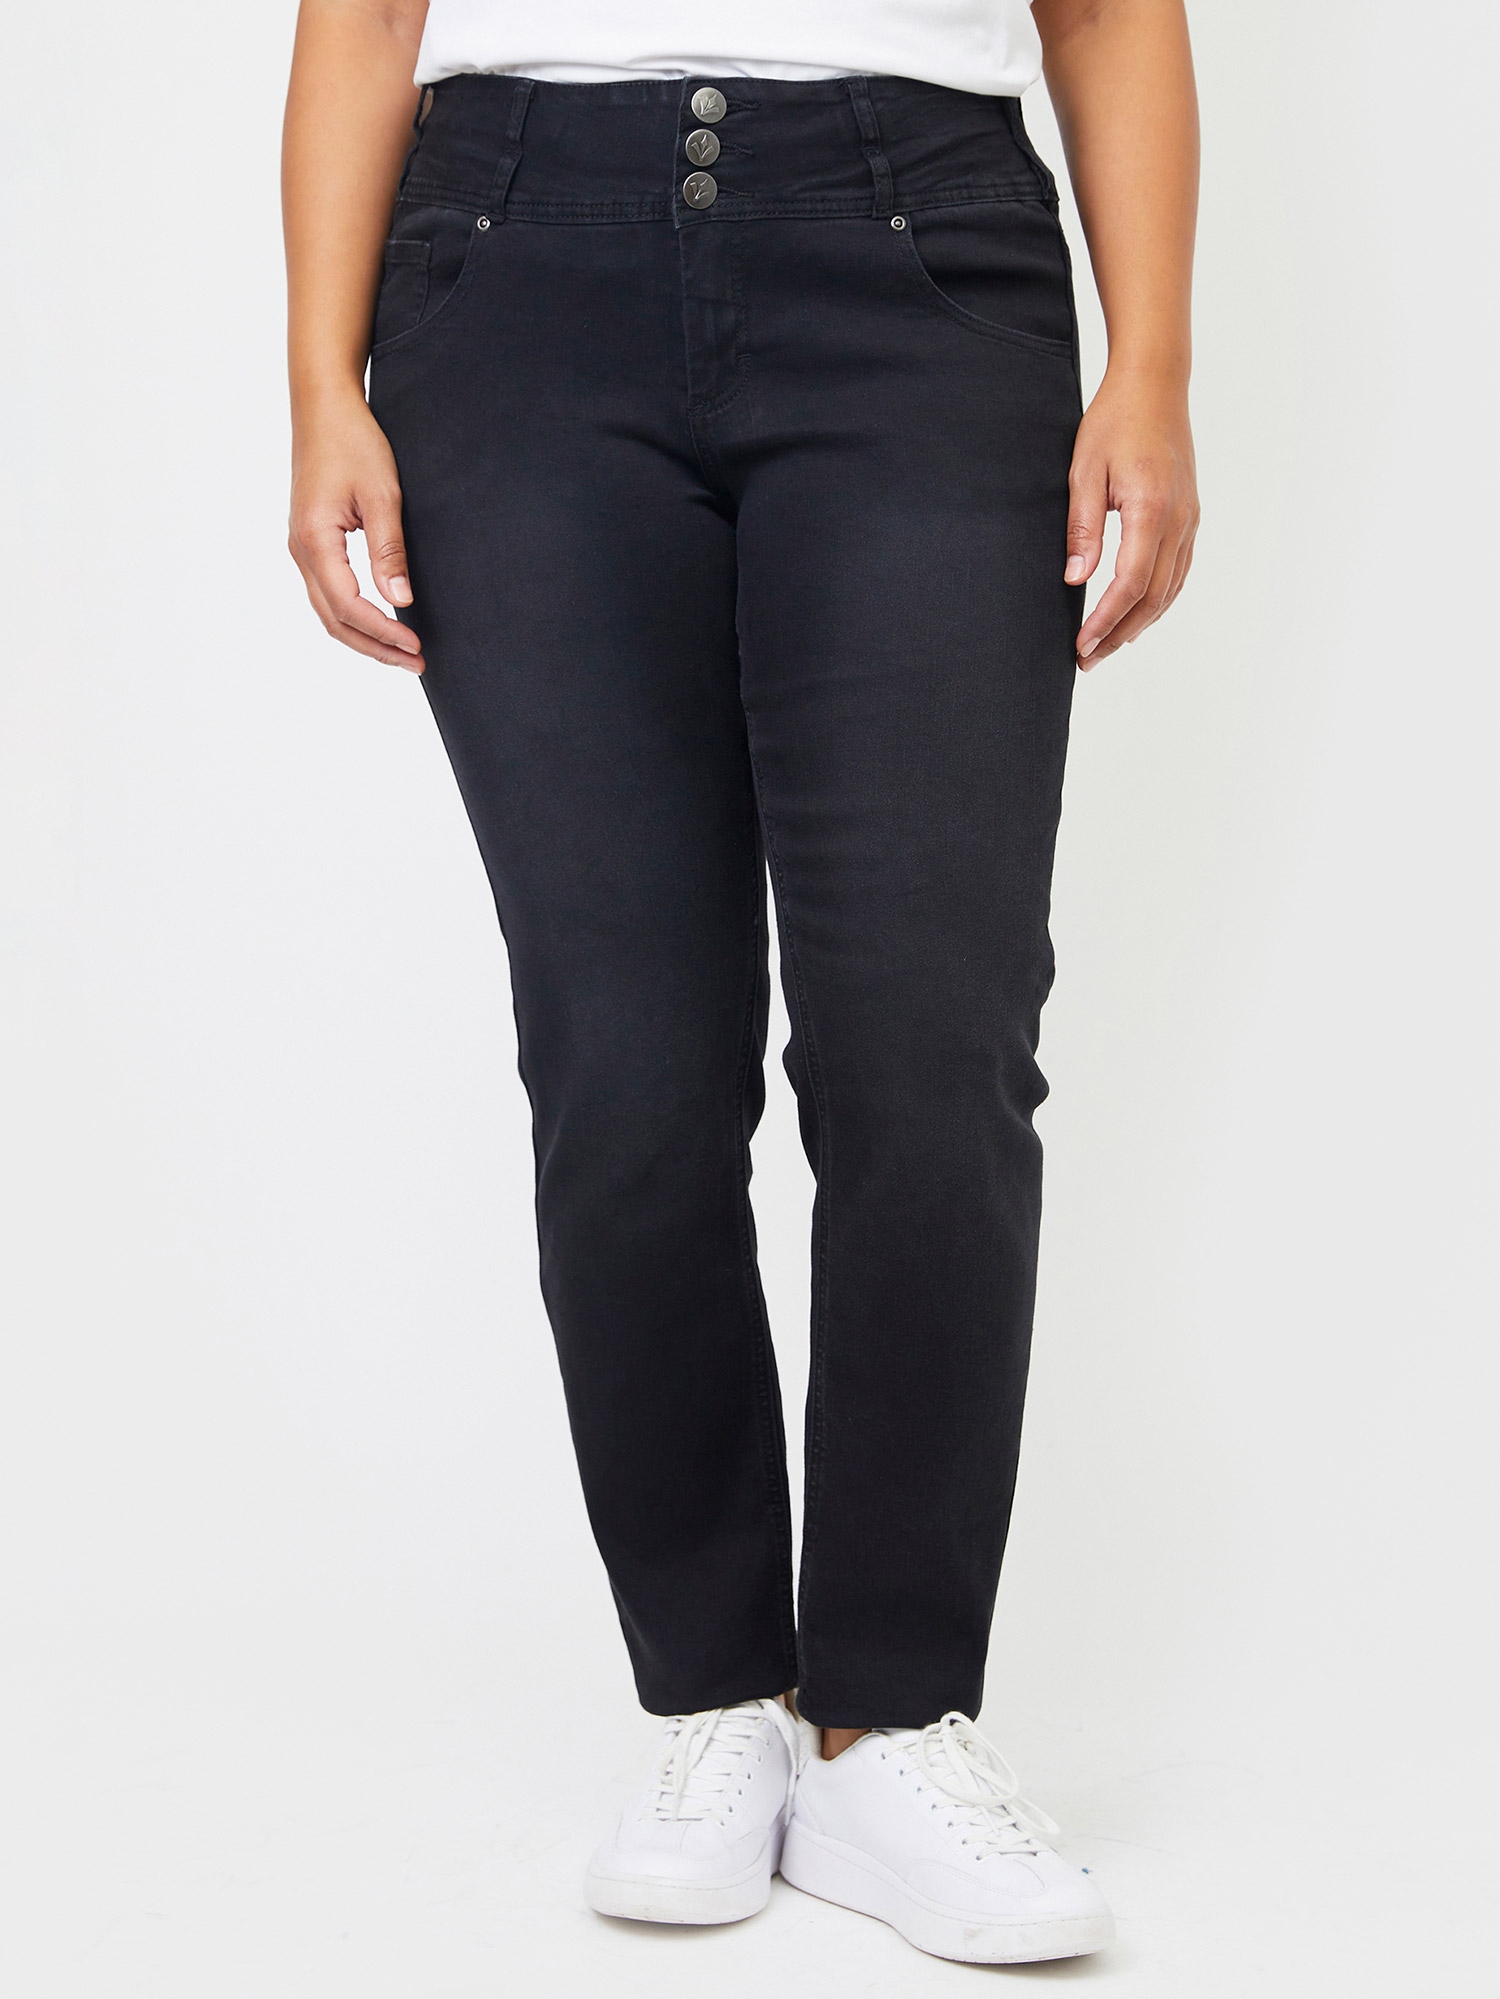 ROME - Svarte jeans med bred linning fra Adia